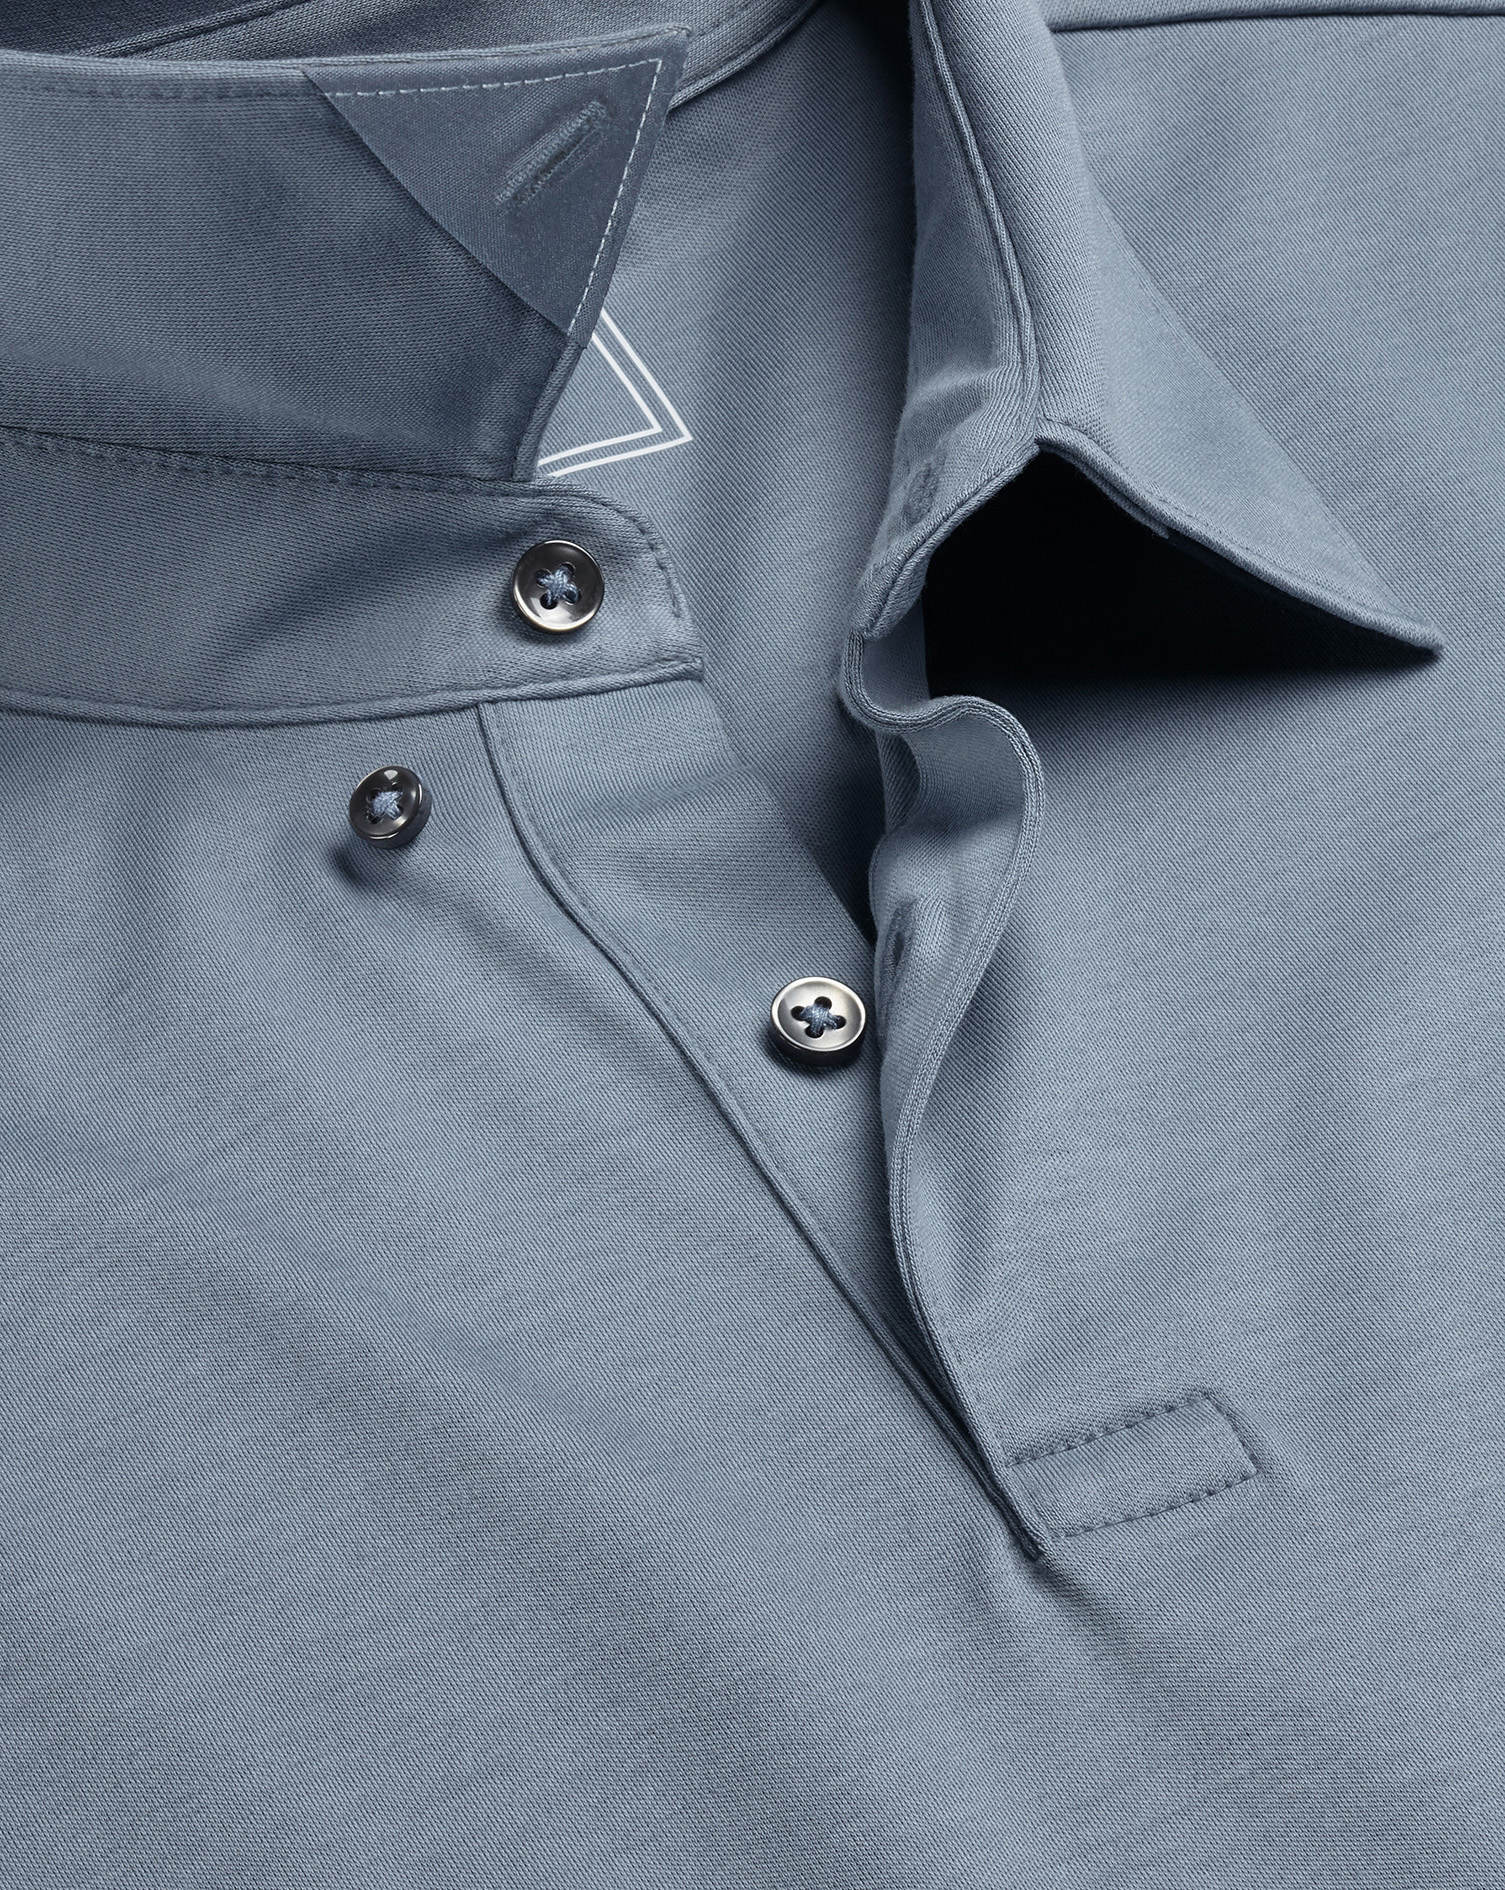 Men's Charles Tyrwhitt Smart Jersey Polo Shirt - Steel Blue Size Medium Cotton
